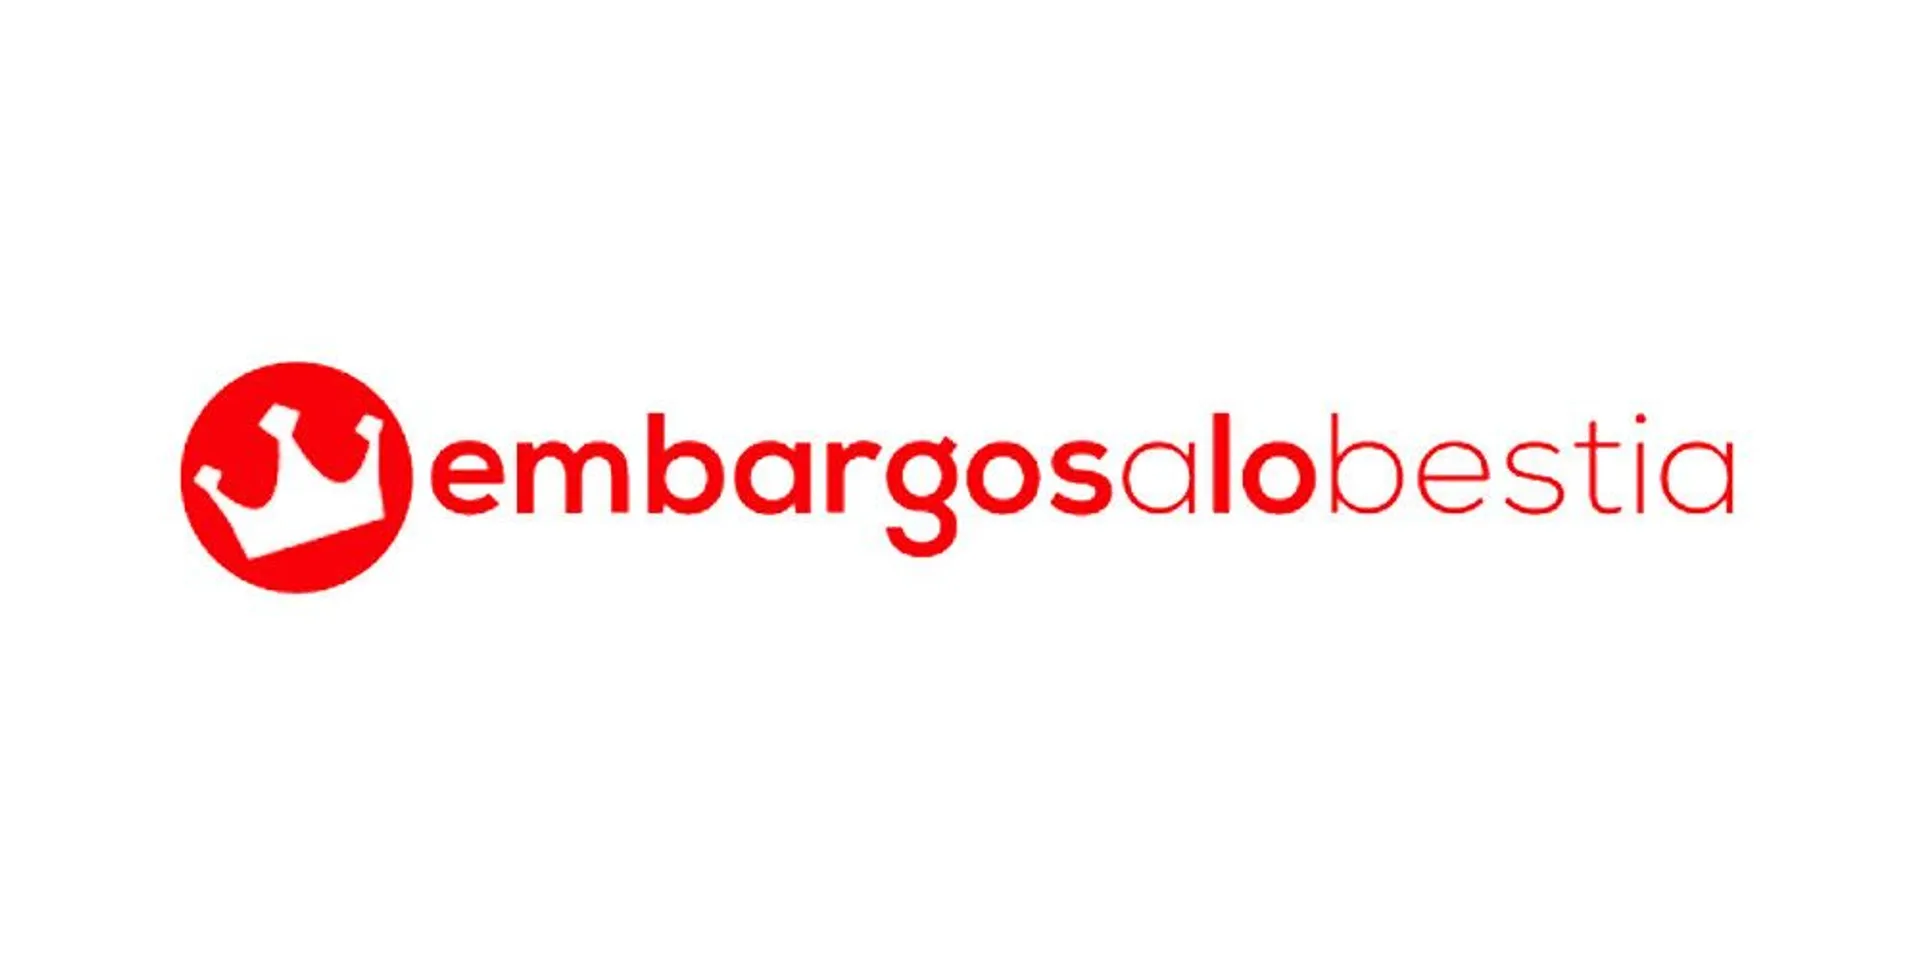 EMBARGOS A LO BESTIA logo